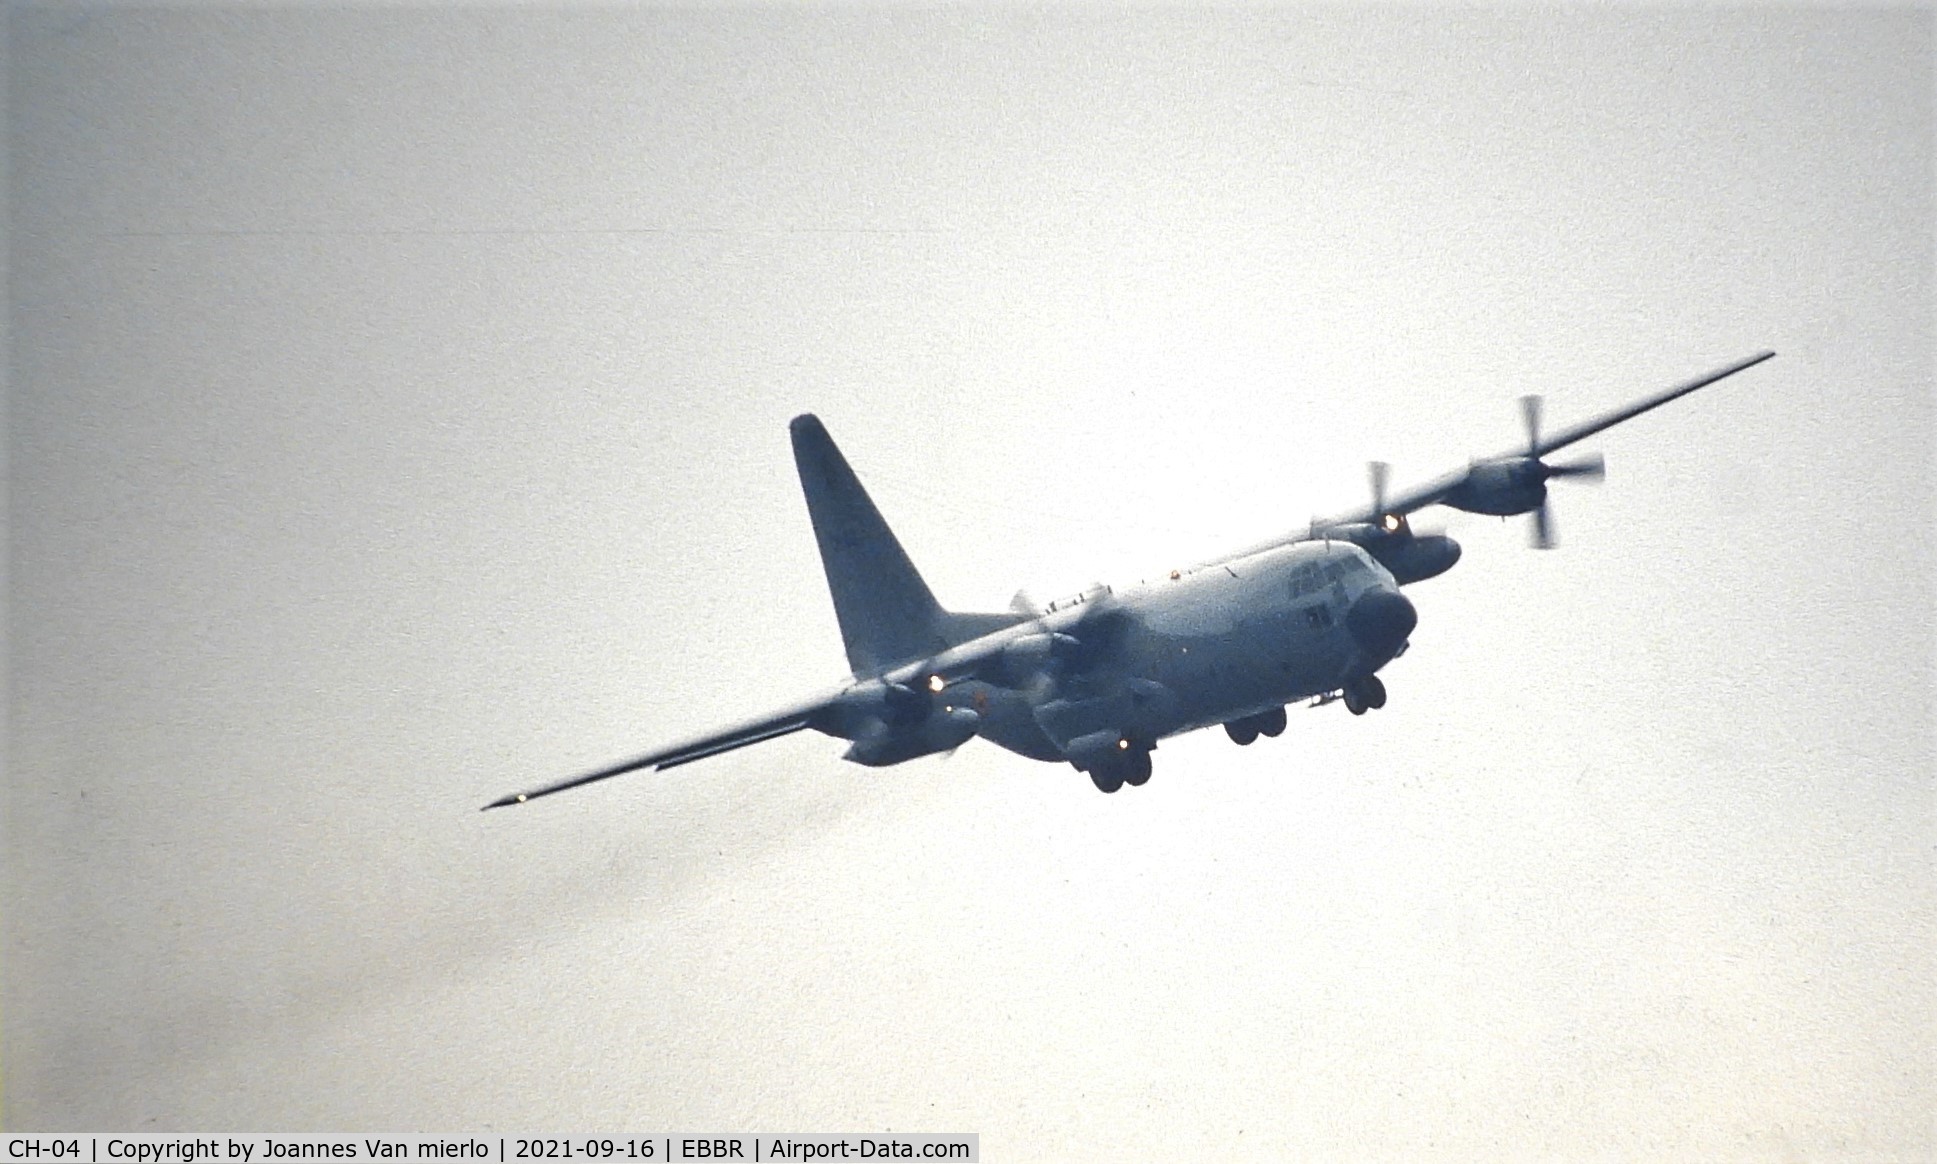 CH-04, 1972 Lockheed C-130H Hercules C/N 382-4467, Slide scan